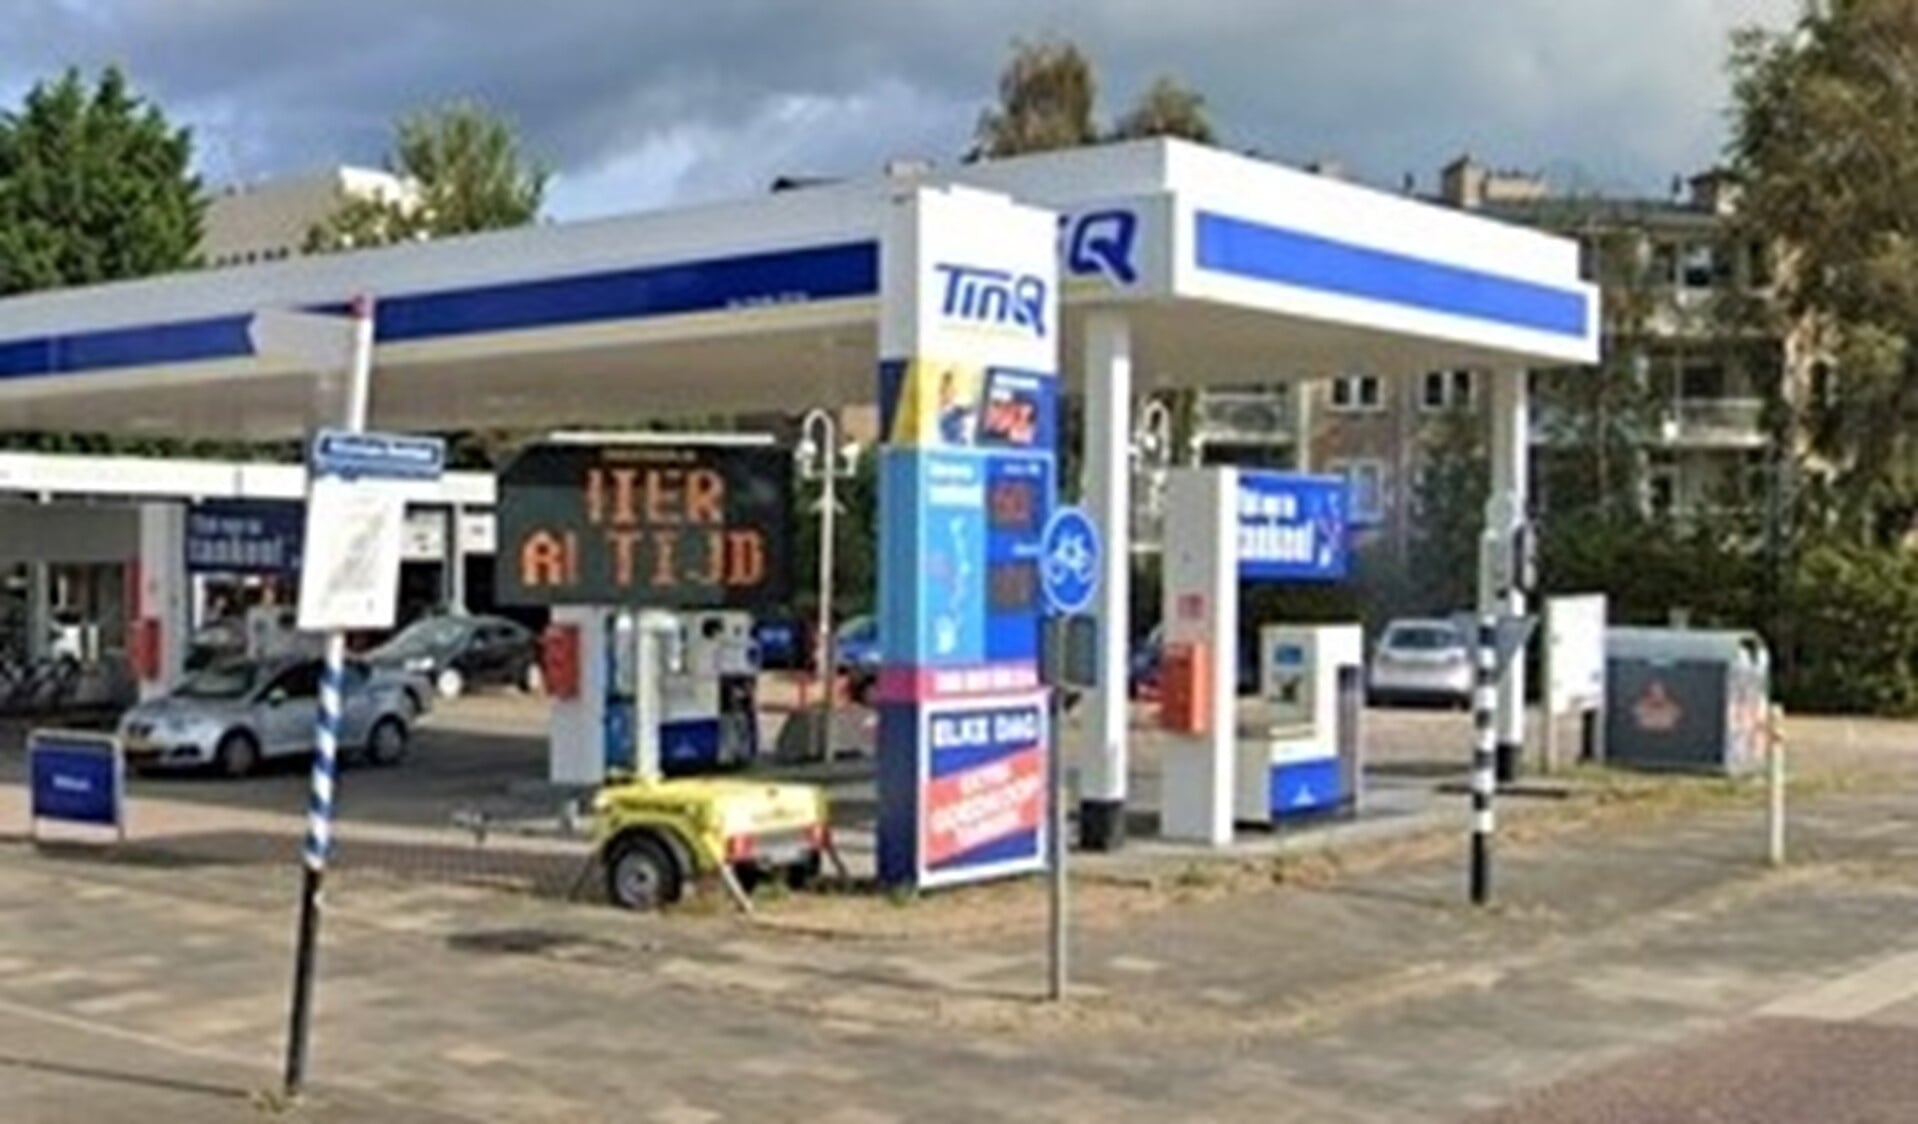 De Tinq-locatie aan de Laan van Nieuw Oosteinde / Nicolaa Beetslaan in Voorburg (foto: Google Streetview).